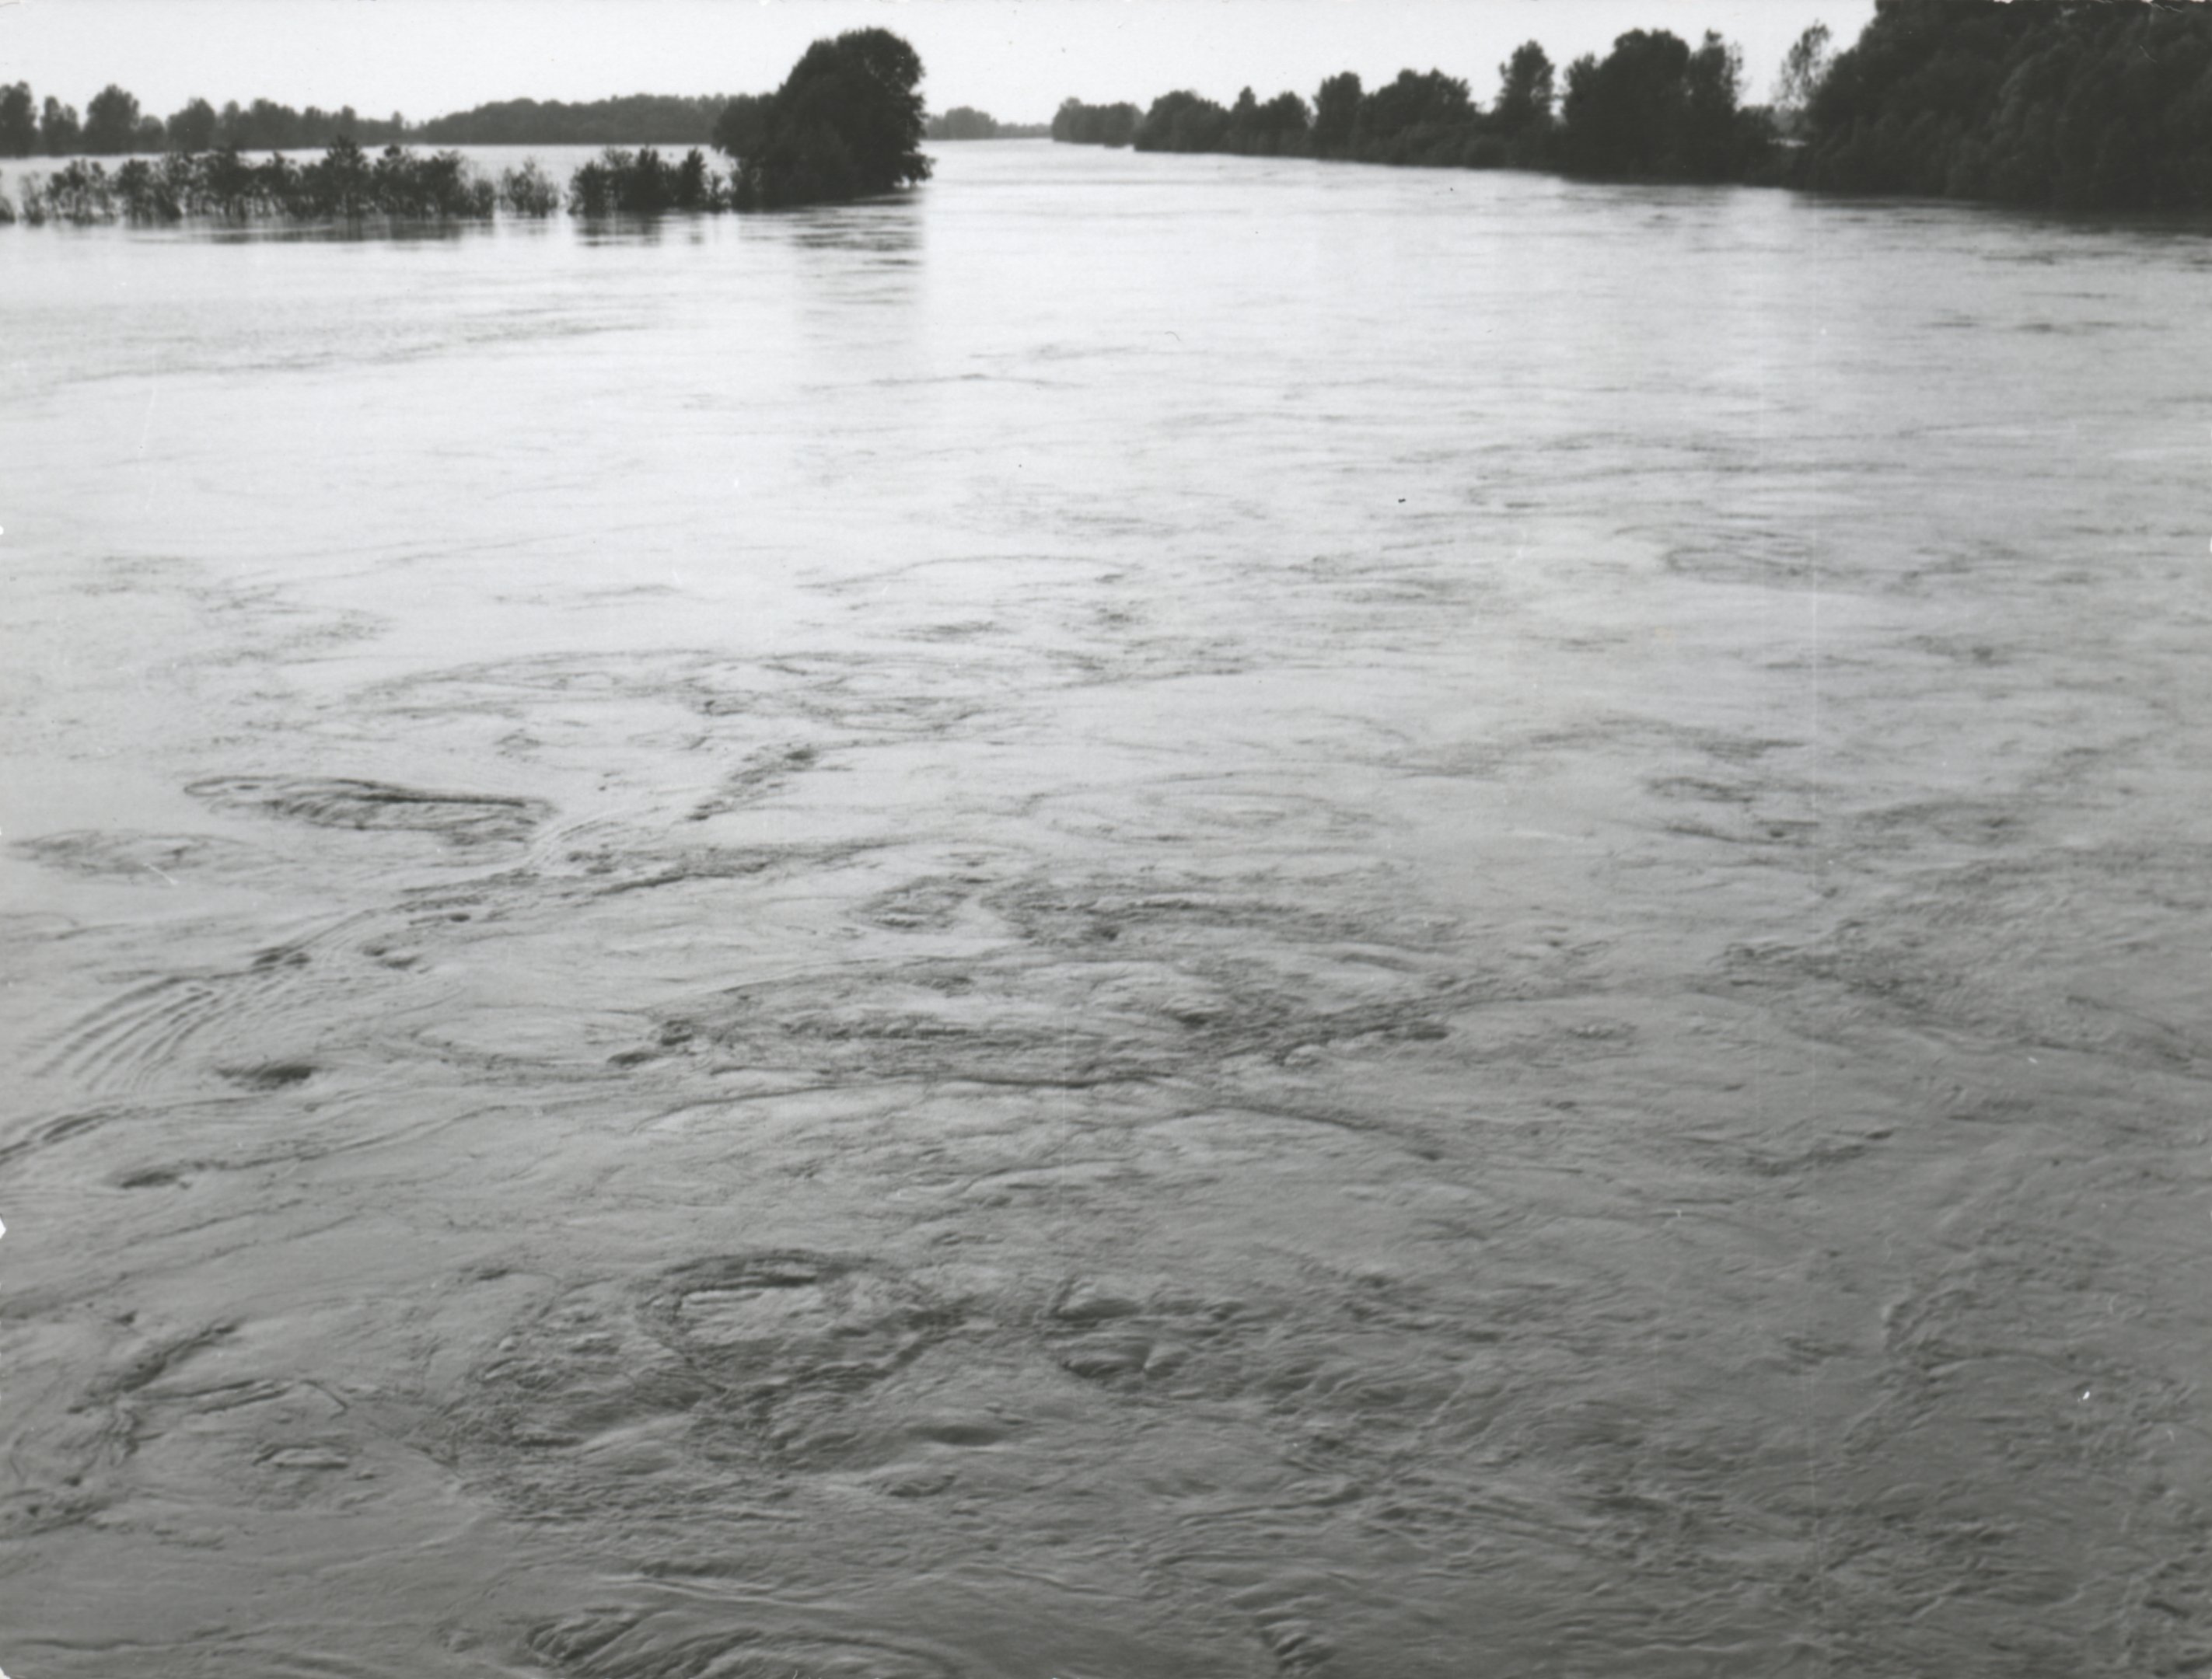 A második árhullám a Szamoson a tunyogmatolcsi hídnál, 1970. június 14. (Magyar Környezetvédelmi és Vízügyi Múzeum - Duna Múzeum CC BY-NC-SA)